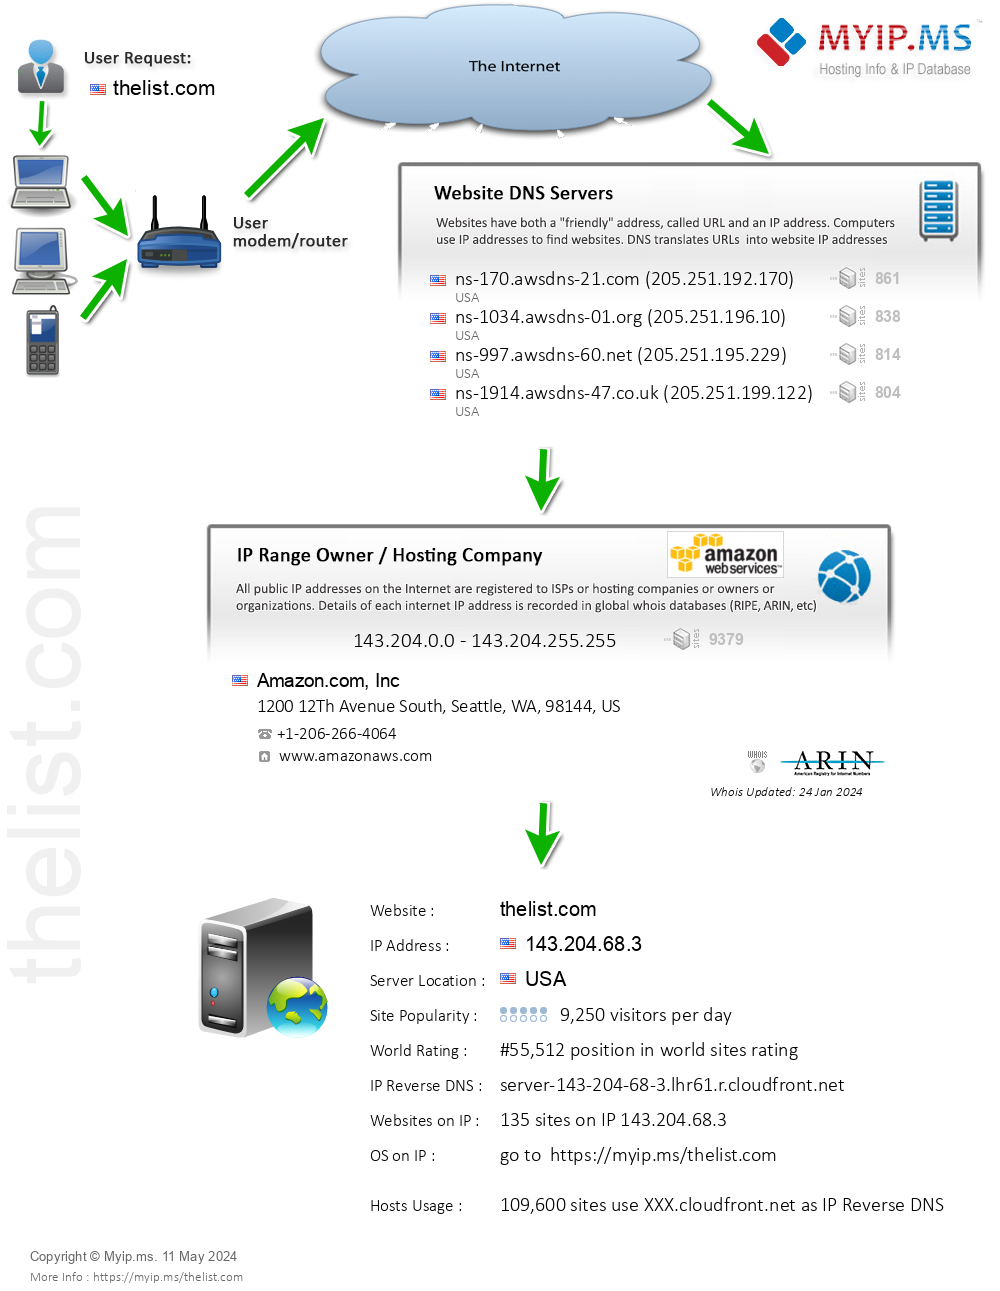 Thelist.com - Website Hosting Visual IP Diagram